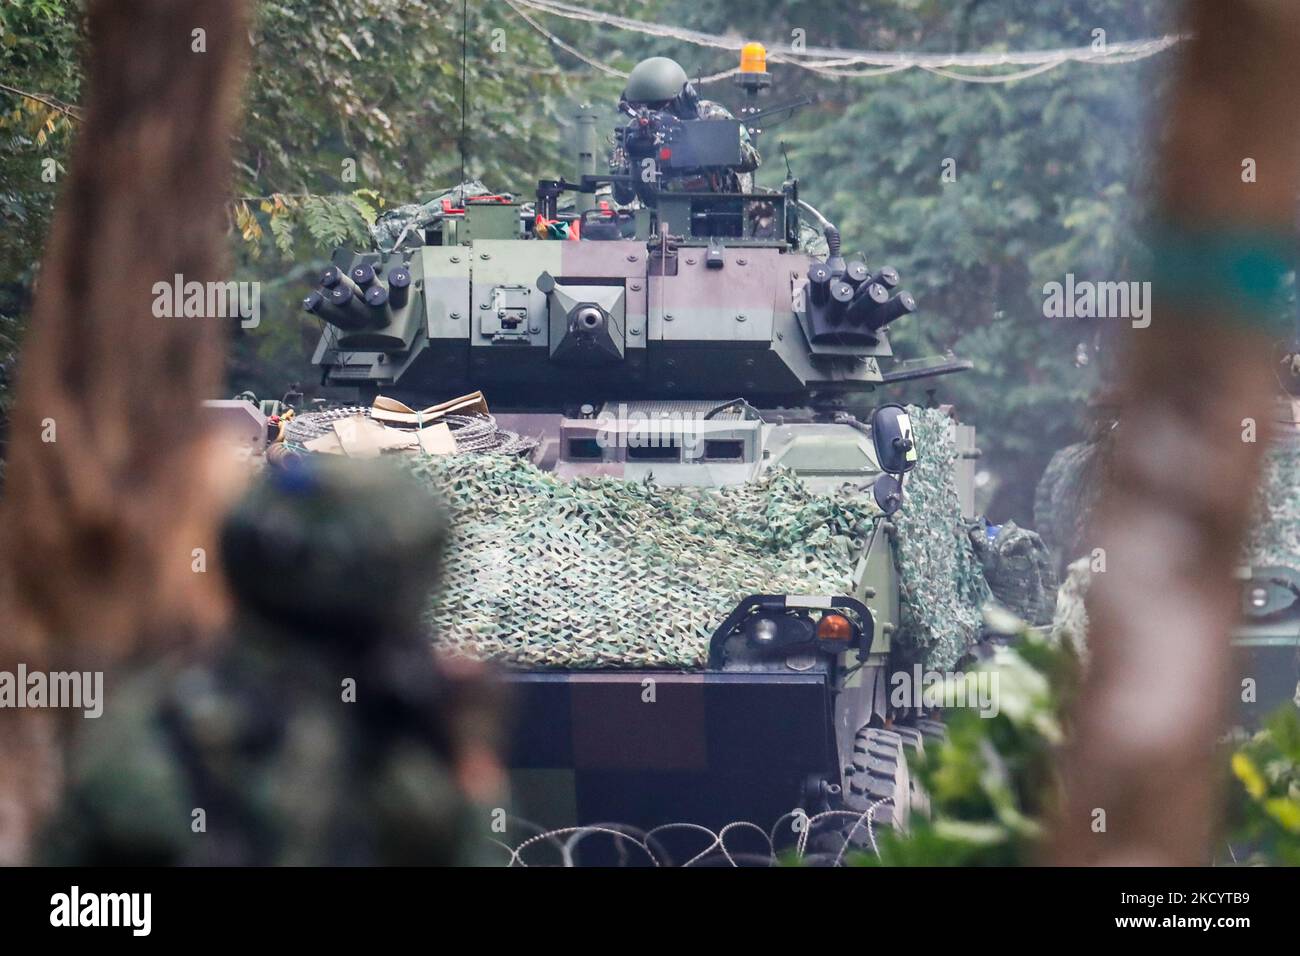 Des soldats avec un lanceur RPG et des mitrailleuses en place alors que les véhicules blindés cm-34 approchent, lors d'un exercice d'amélioration de la préparation de l'armée en prévision du nouvel an chinois, dans un contexte d'escalade des tensions chinoises sur l'île. (Photo de CEng Shou Yi/NurPhoto) Banque D'Images